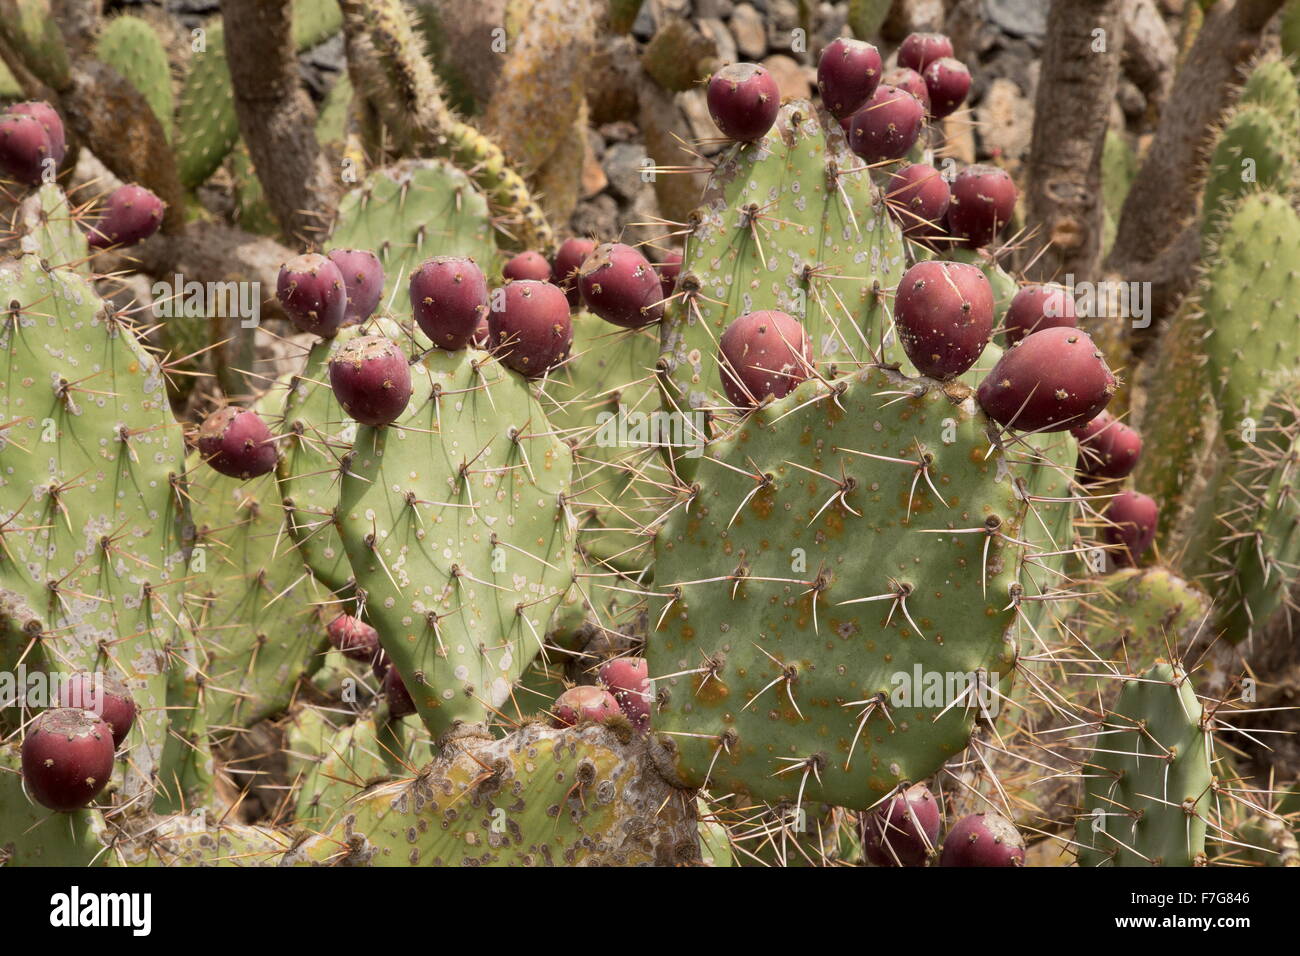 Mojave figuier de Barbarie, Opuntia mojavensis dans les fruits. Désert de Mojave. Banque D'Images